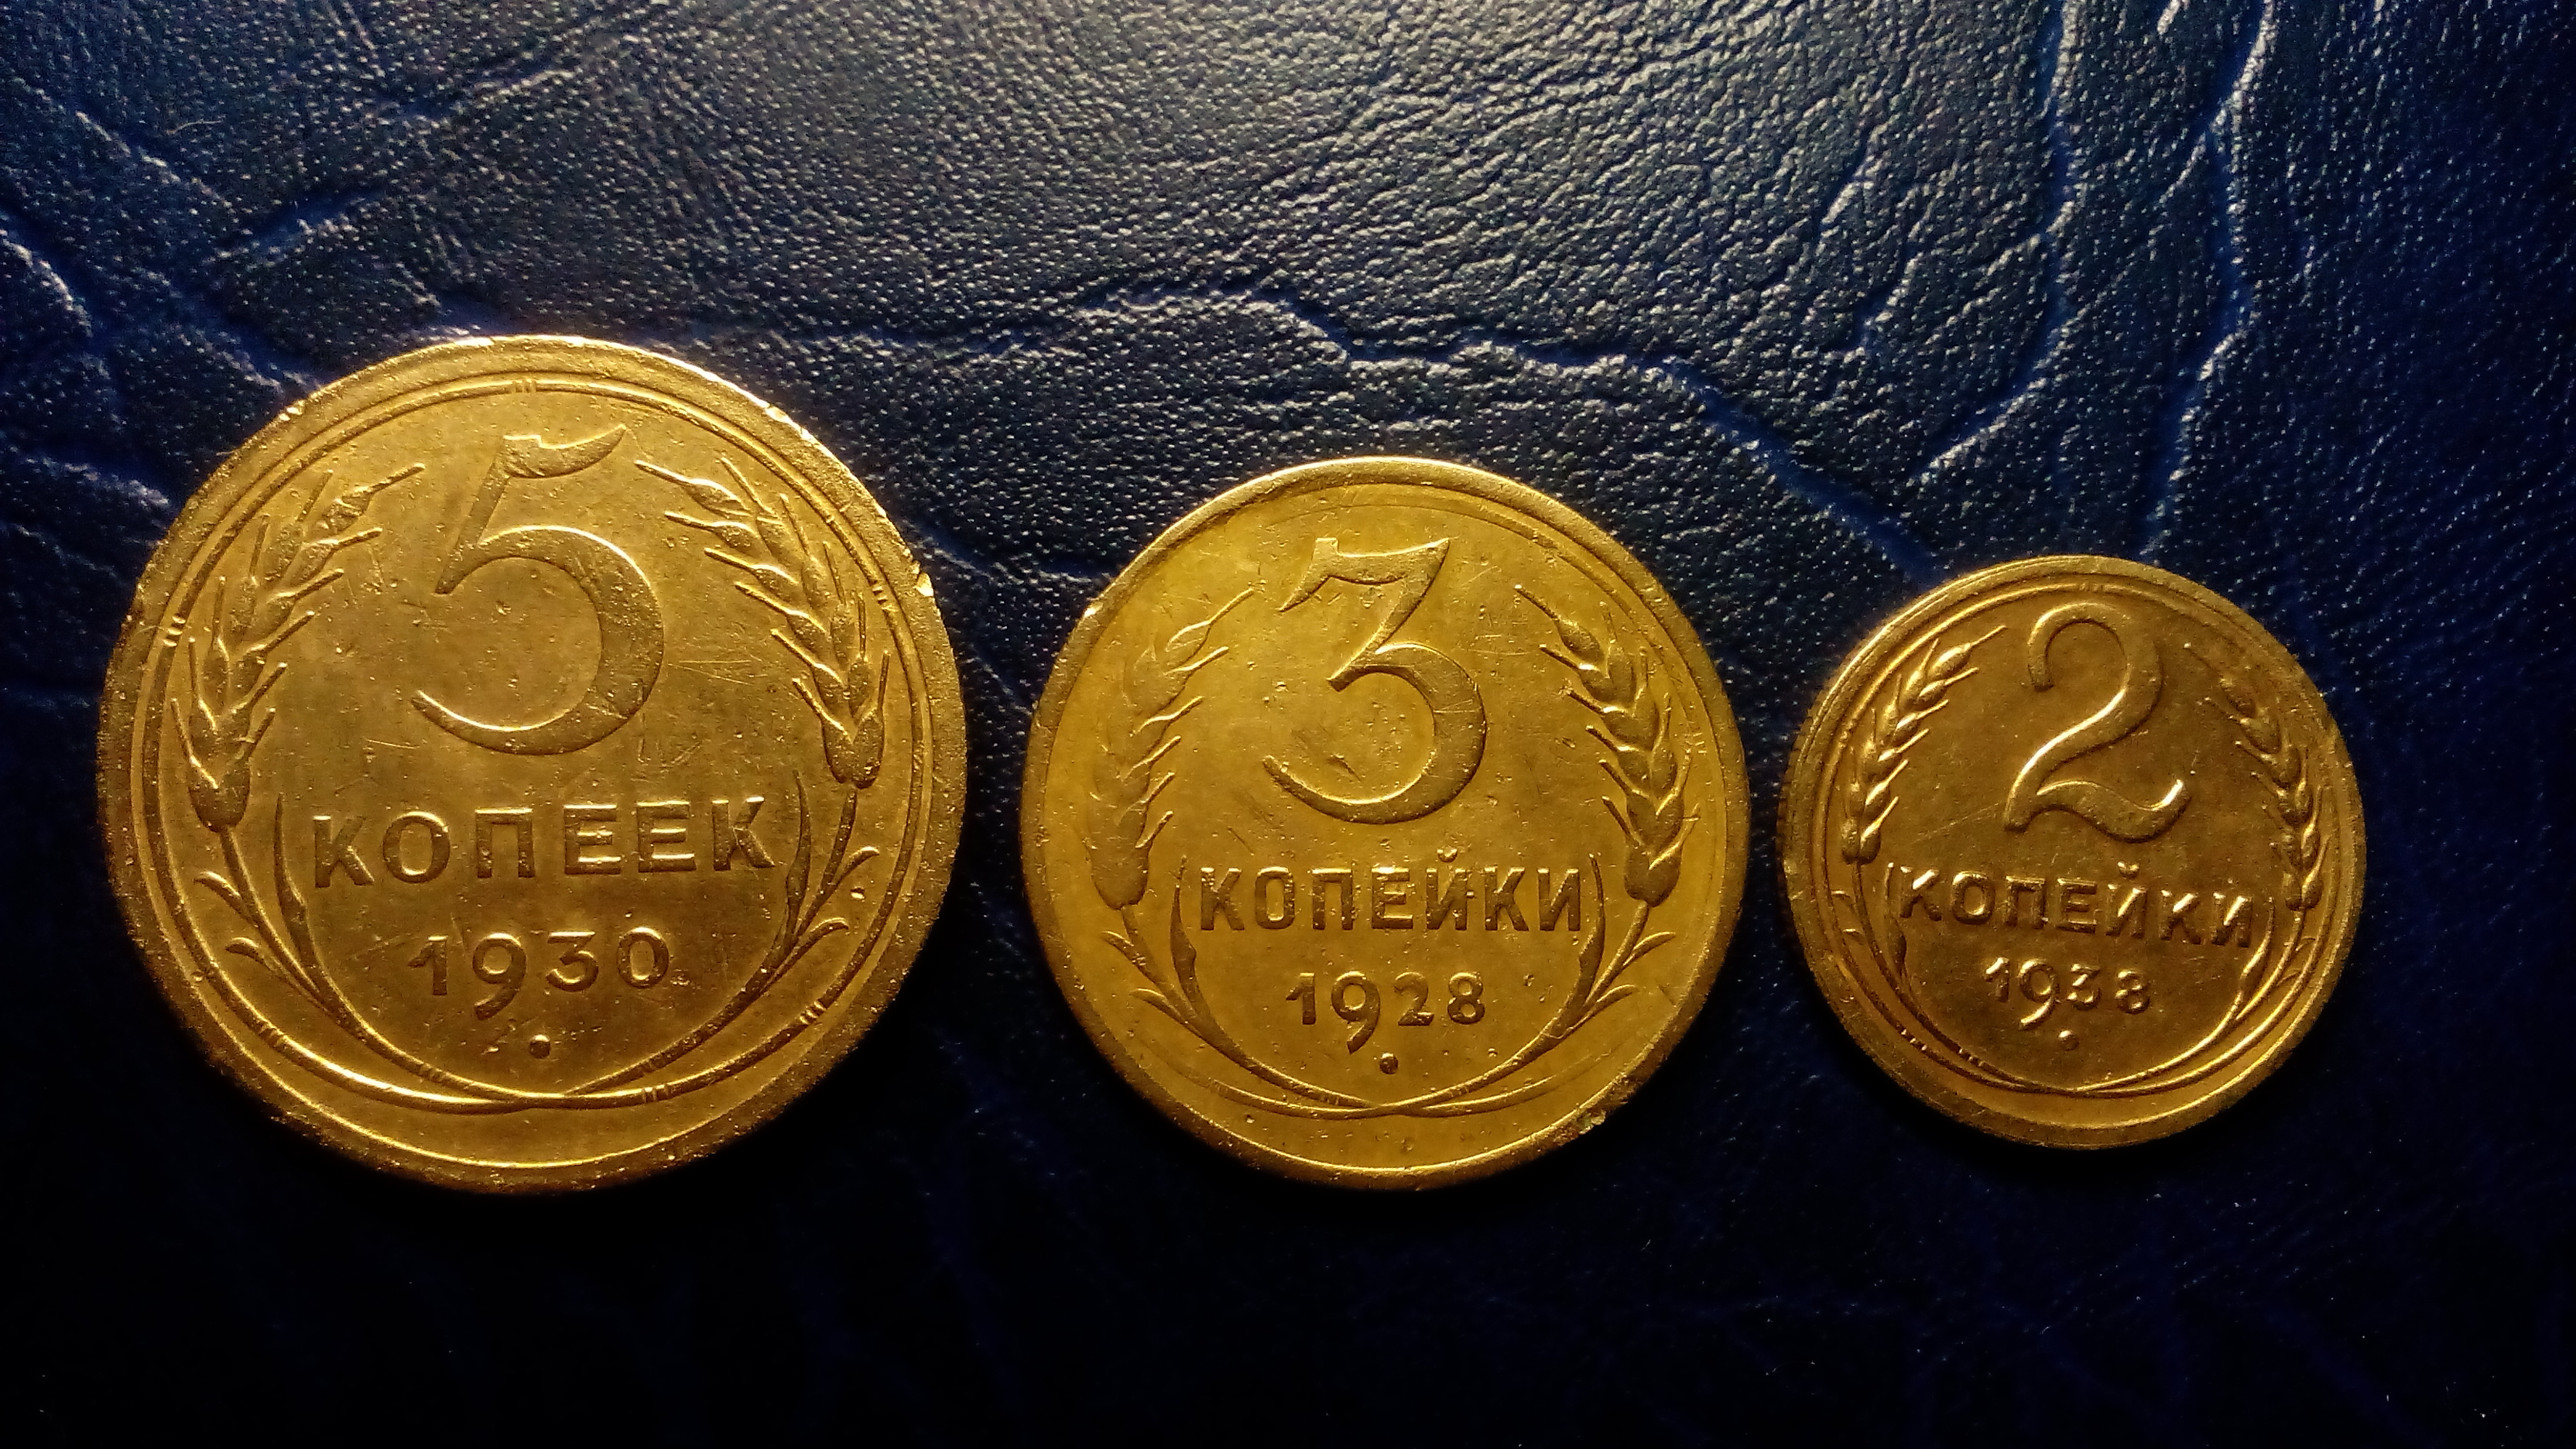 Чистка медных монет не такой уж простой процесс, старинные царские или эпохи СССР металлические деньги требуют бережного подхода